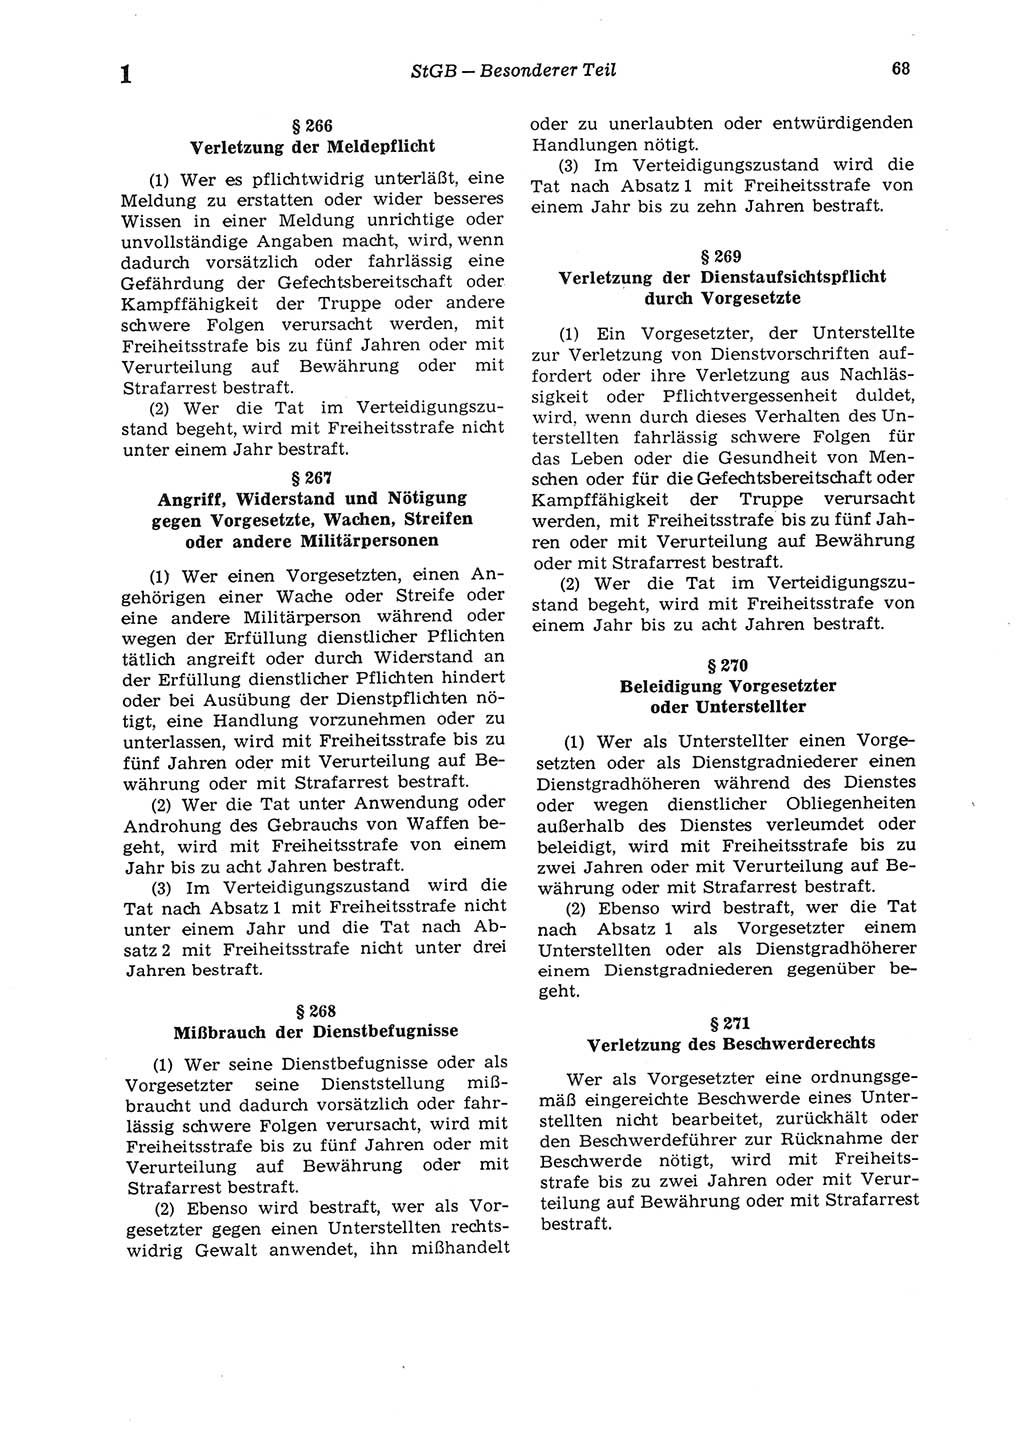 Strafgesetzbuch (StGB) der Deutschen Demokratischen Republik (DDR) 1987, Seite 68 (StGB DDR 1987, S. 68)